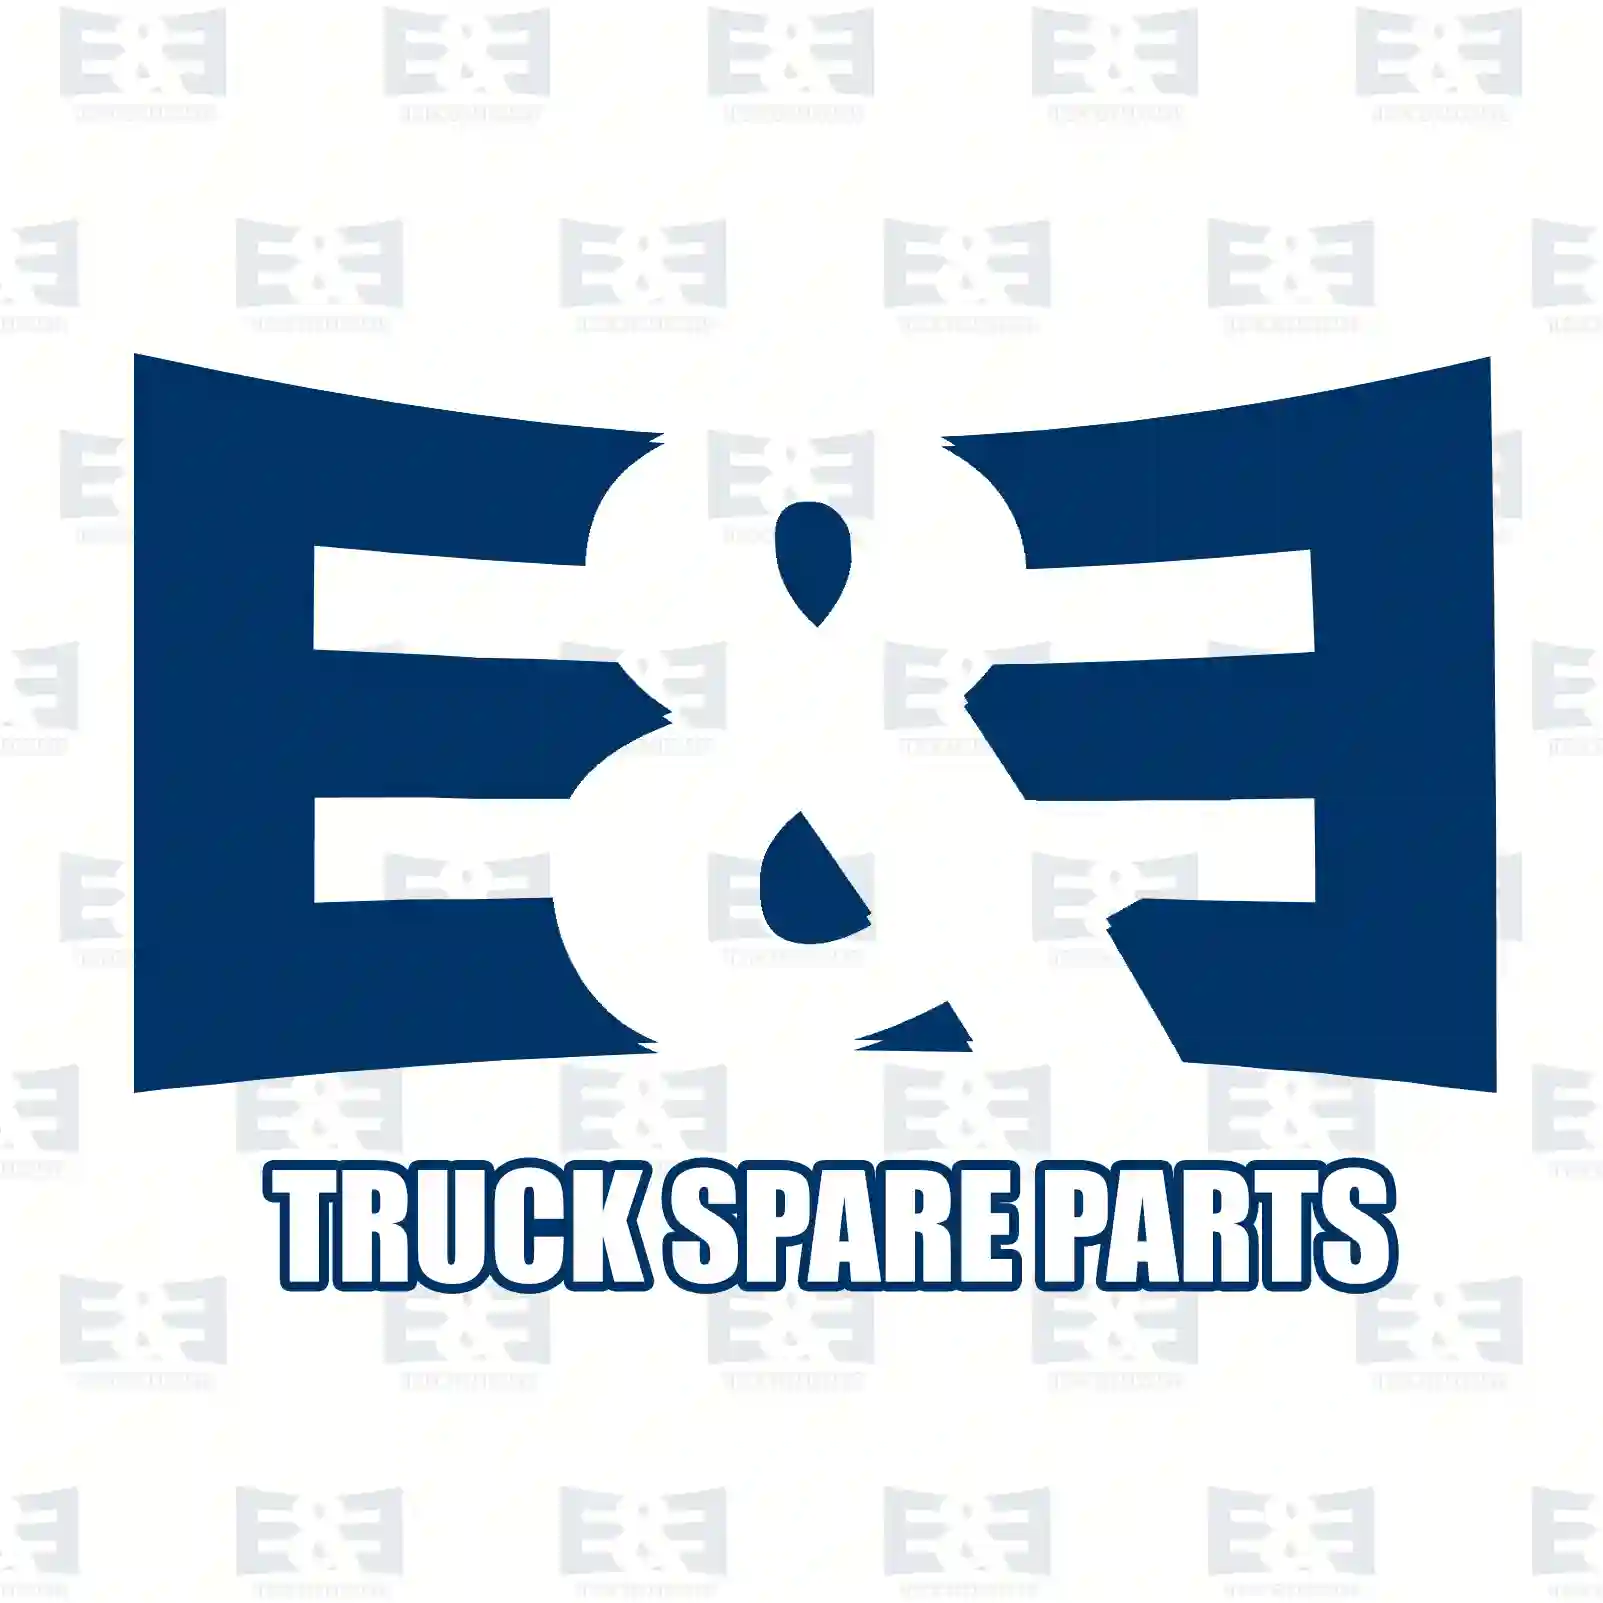 Palm coupling, 2E2296196, F005381 ||  2E2296196 E&E Truck Spare Parts | Truck Spare Parts, Auotomotive Spare Parts Palm coupling, 2E2296196, F005381 ||  2E2296196 E&E Truck Spare Parts | Truck Spare Parts, Auotomotive Spare Parts